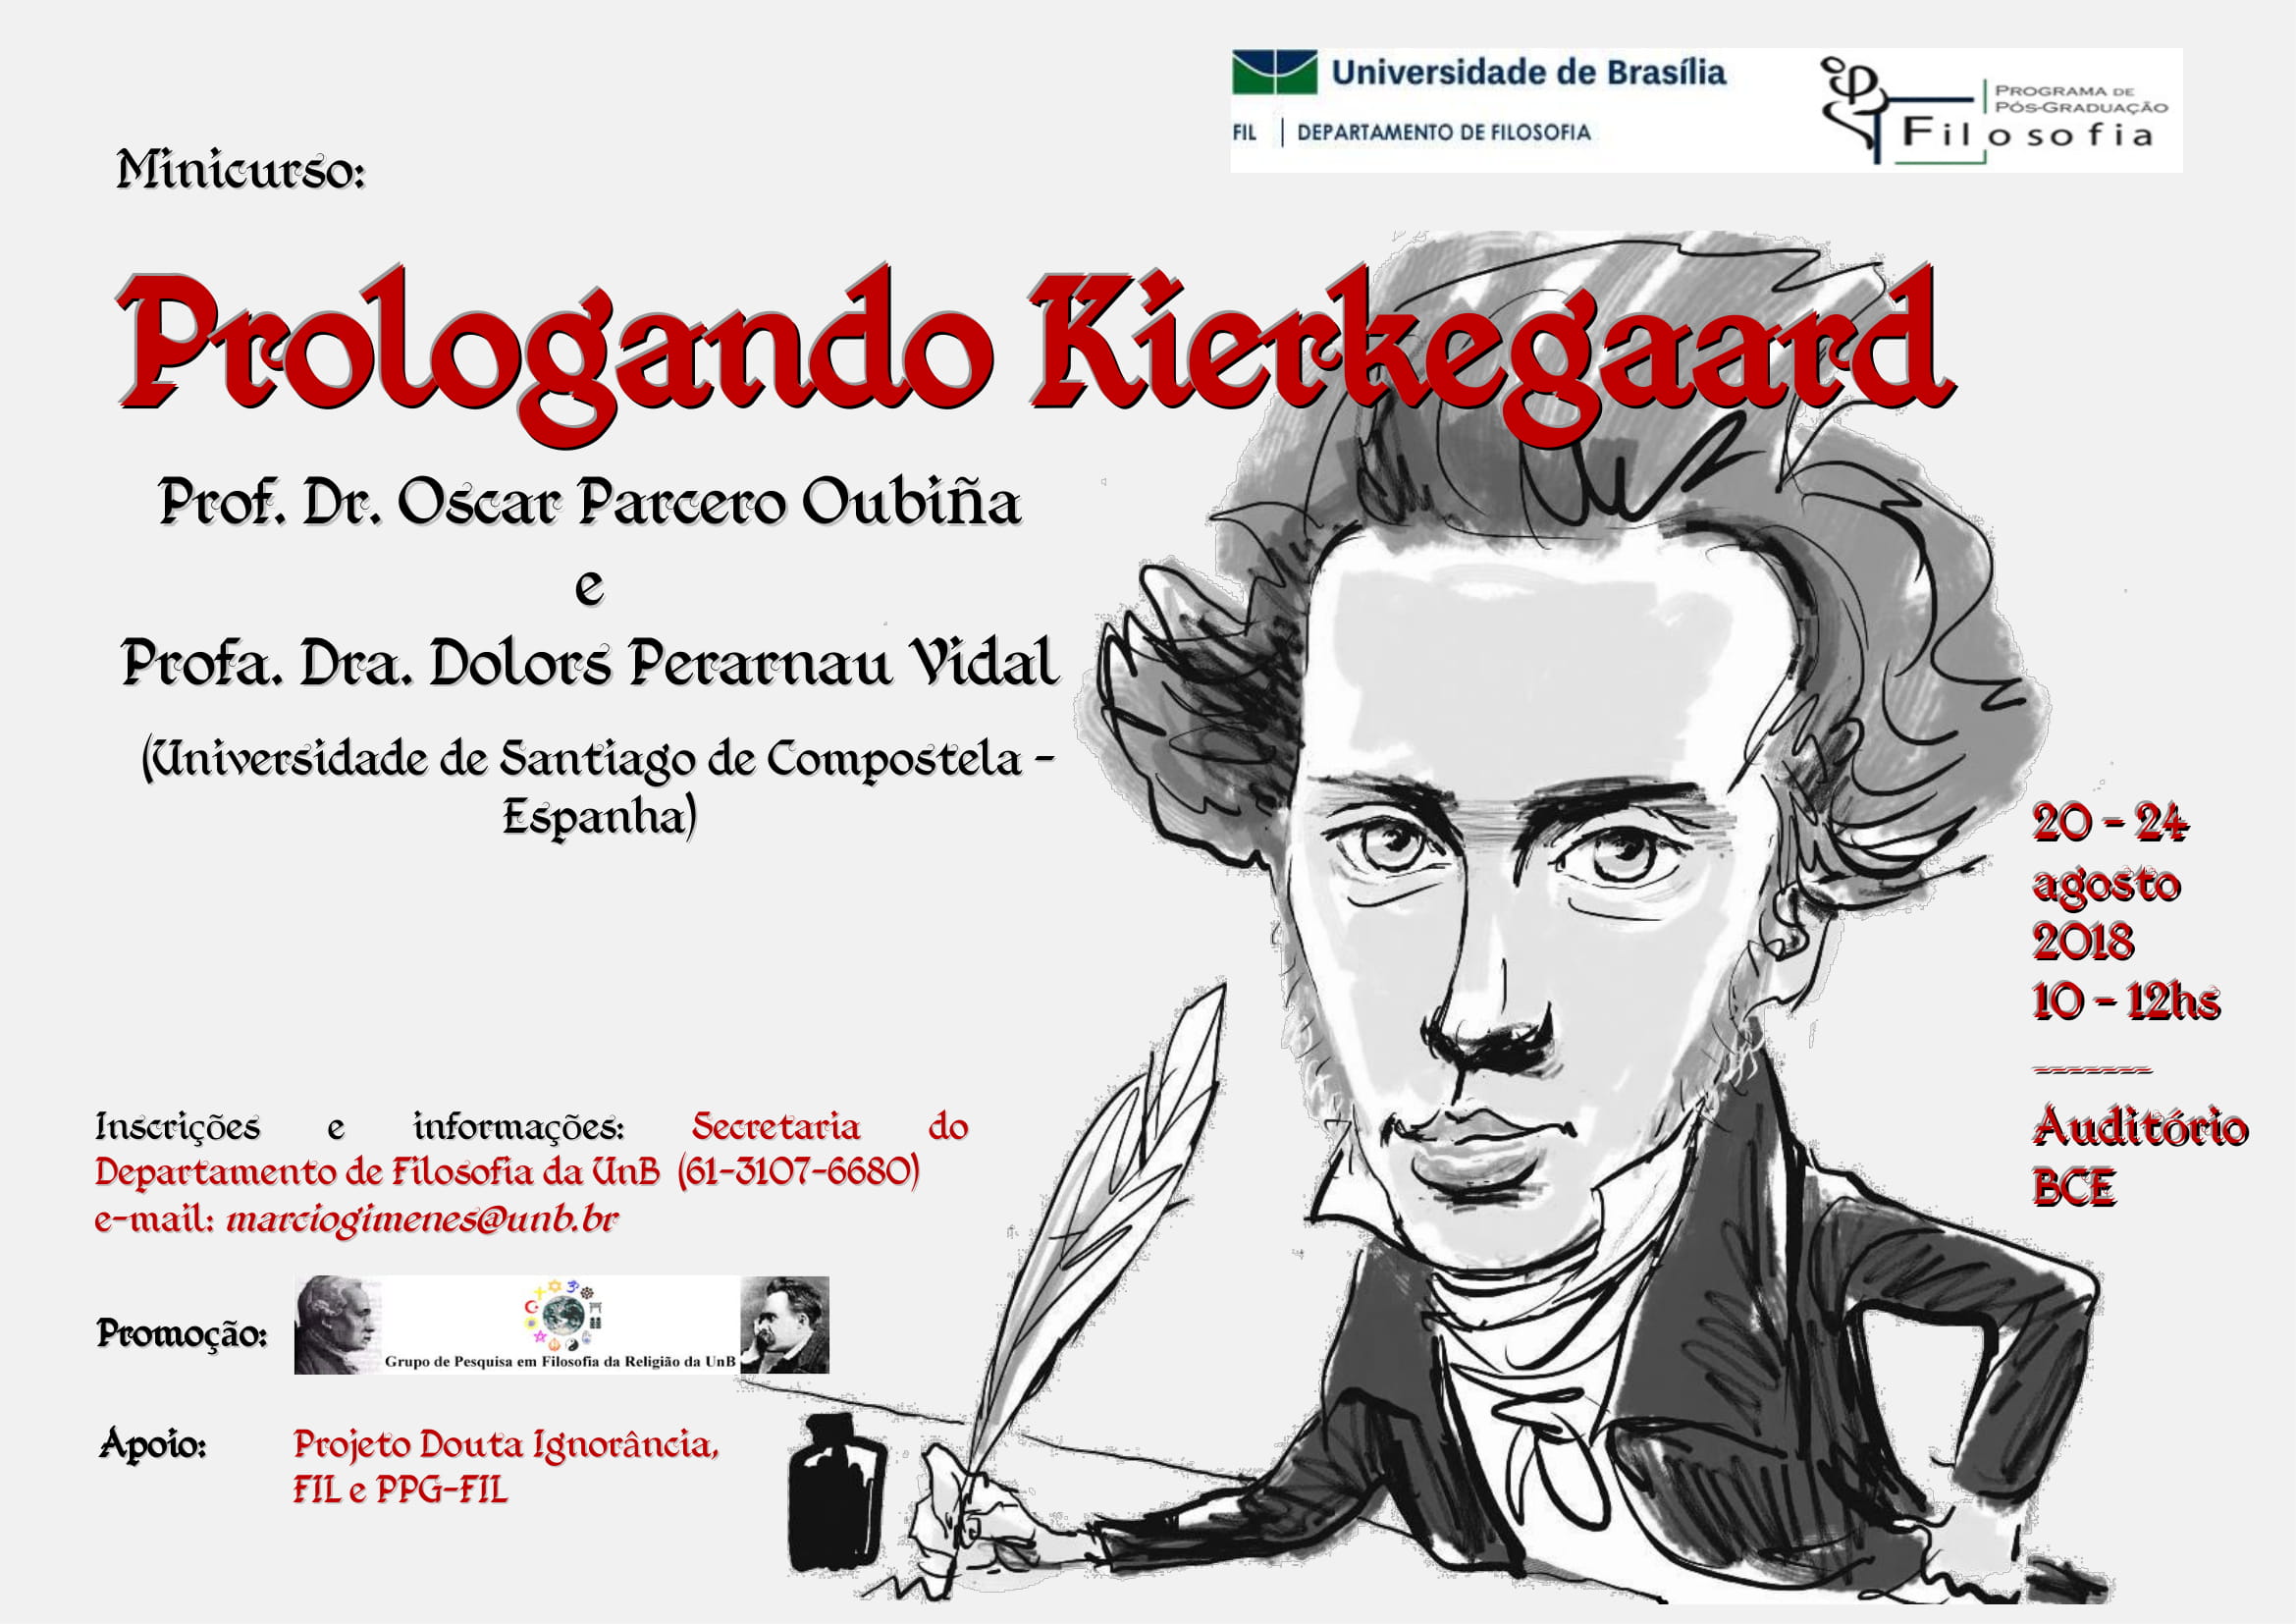 Minicurso "Prologando Kierkegaard"